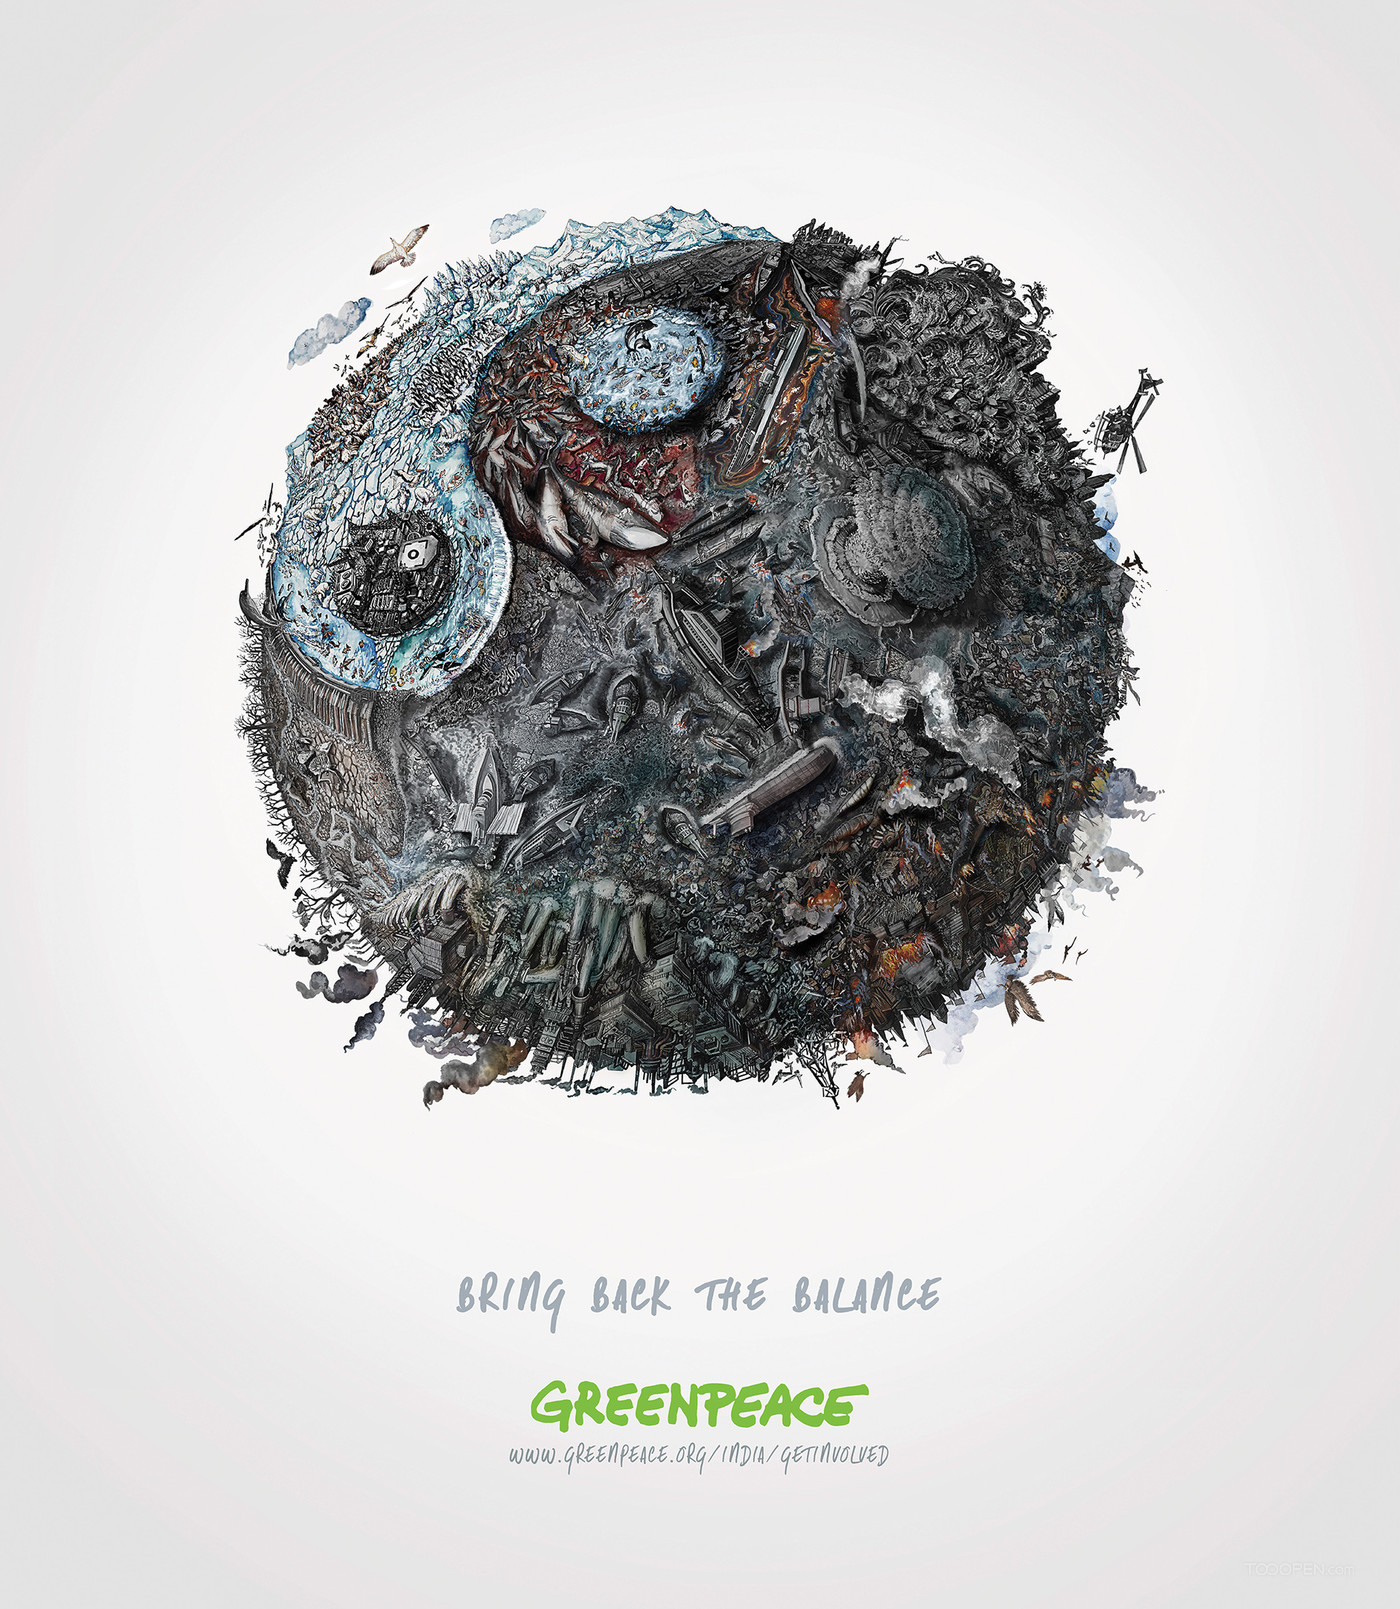 保护地球生态平衡公益海报设计欣赏-02